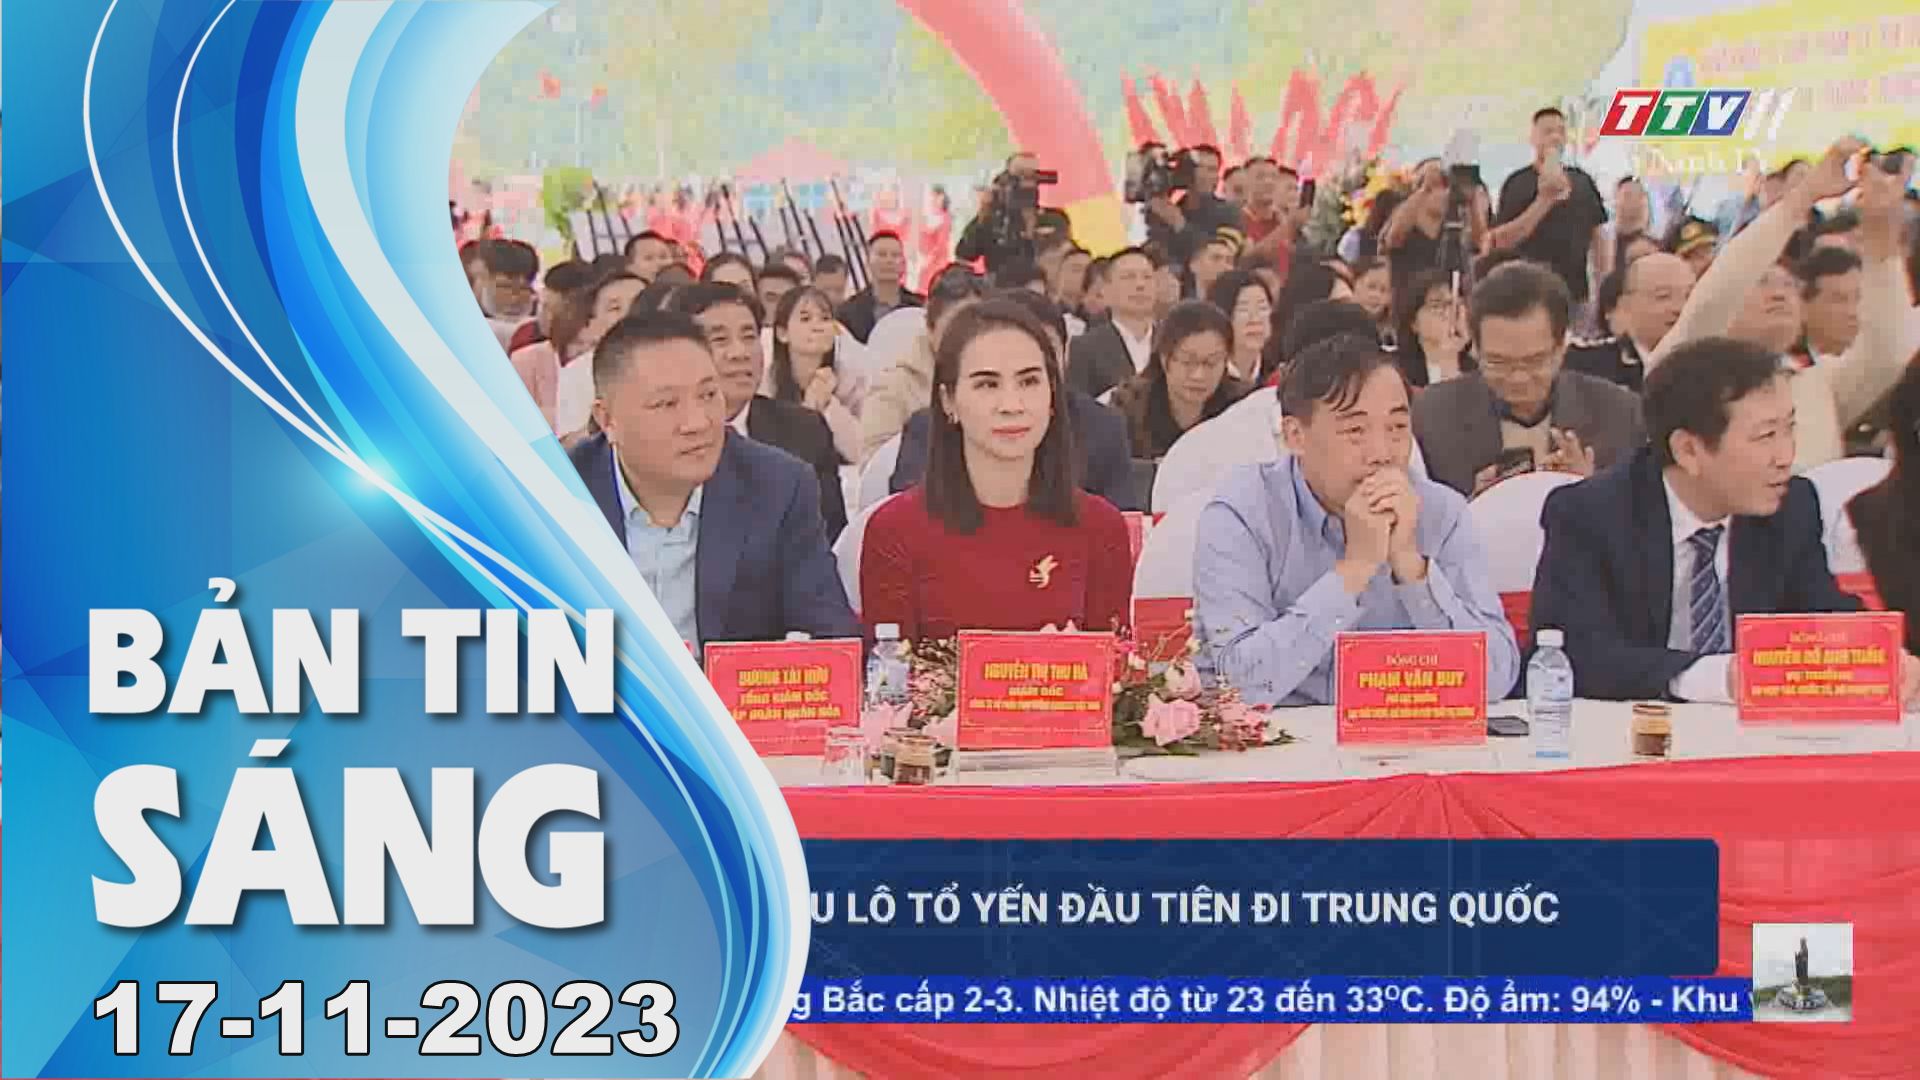 Bản tin sáng 17-11-2023 | Tin tức hôm nay | TayNinhTV